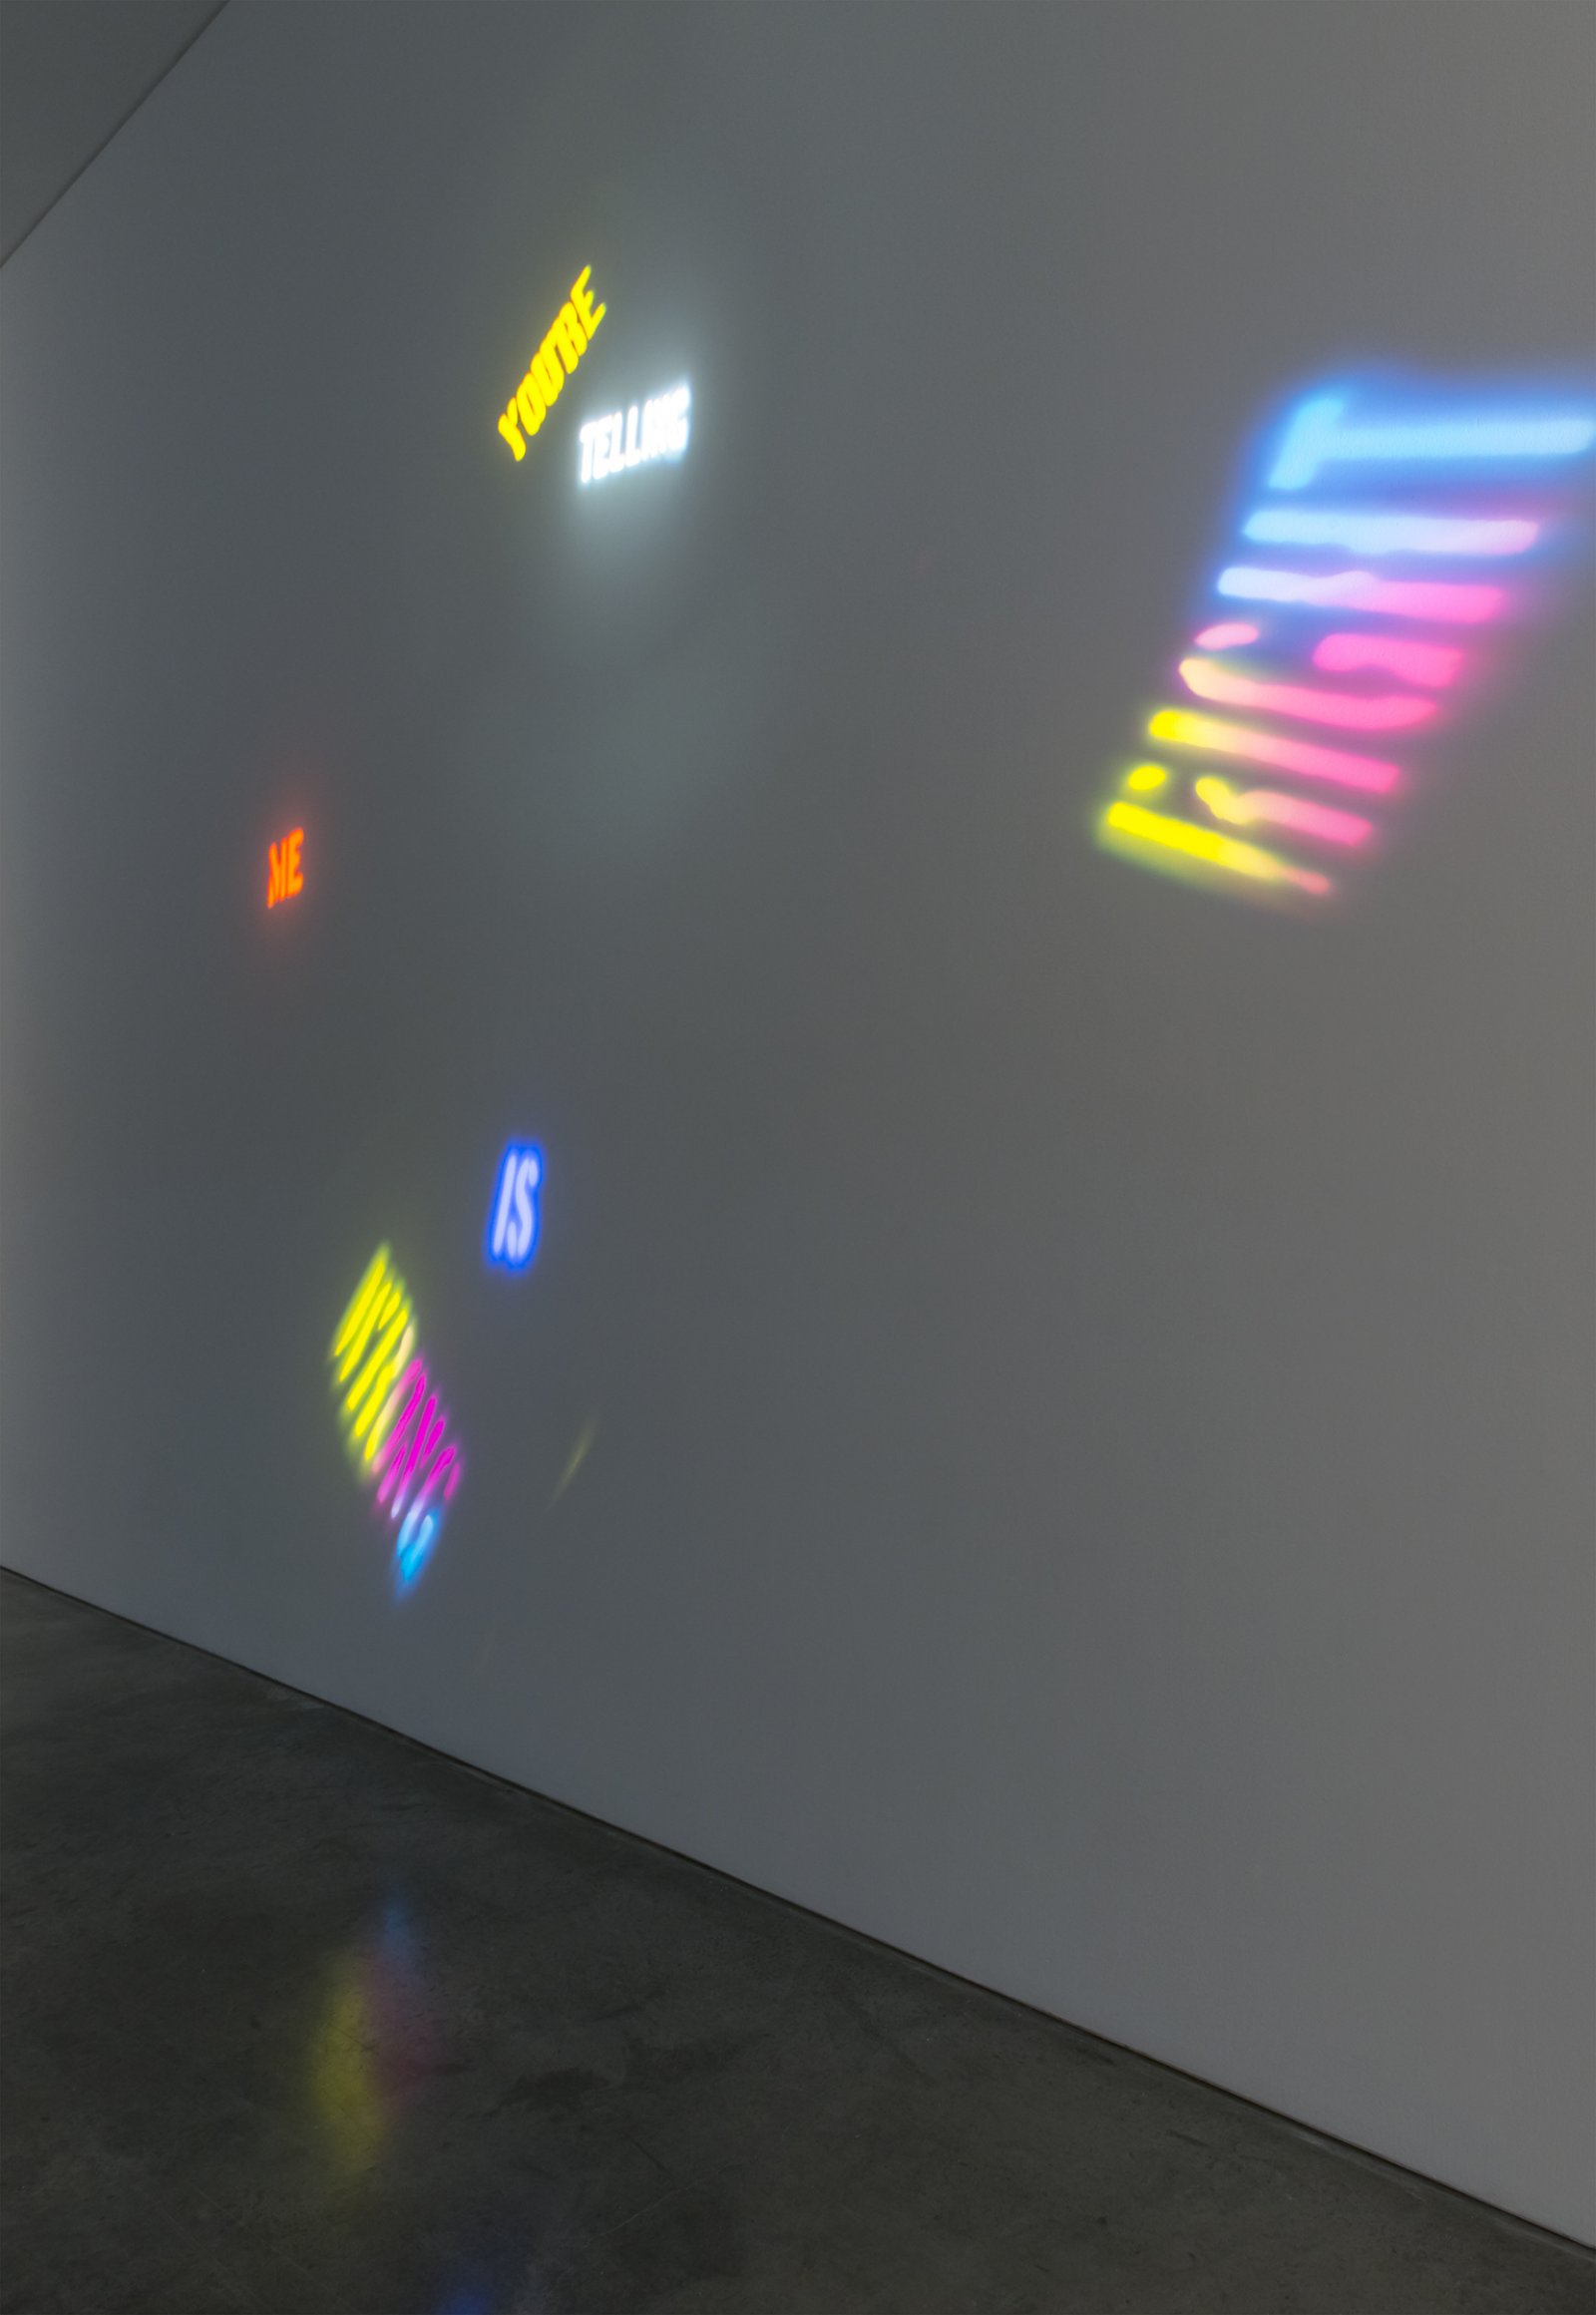 Kevin Schmidt, Angel of Light, 2010, custom gobos, 10 scanner lighting fixtures, maxmsp program, dimensions variable. Installation view, The Commons, Kamloops Art Gallery, Kamloops, Canada, 2015